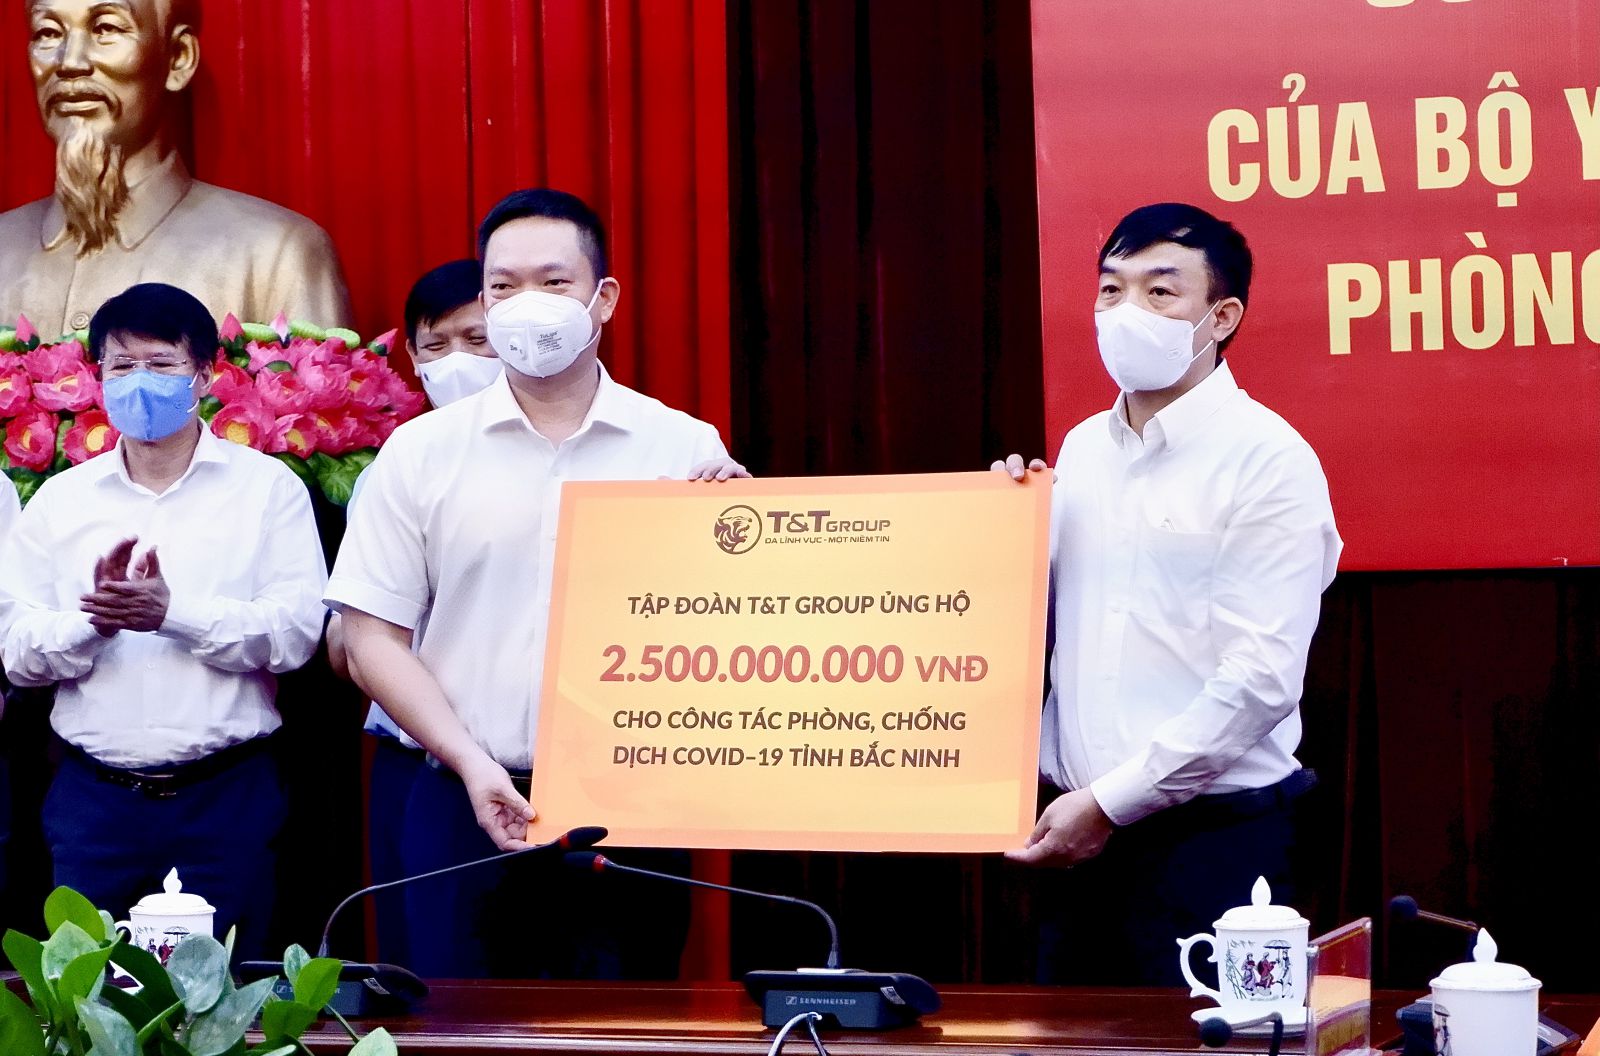 Đại diện Tập đoàn T&T Group trao ủng hộ tỉnh Bắc Ninh 500 tấn gạo và 2,5 tỷ đồng